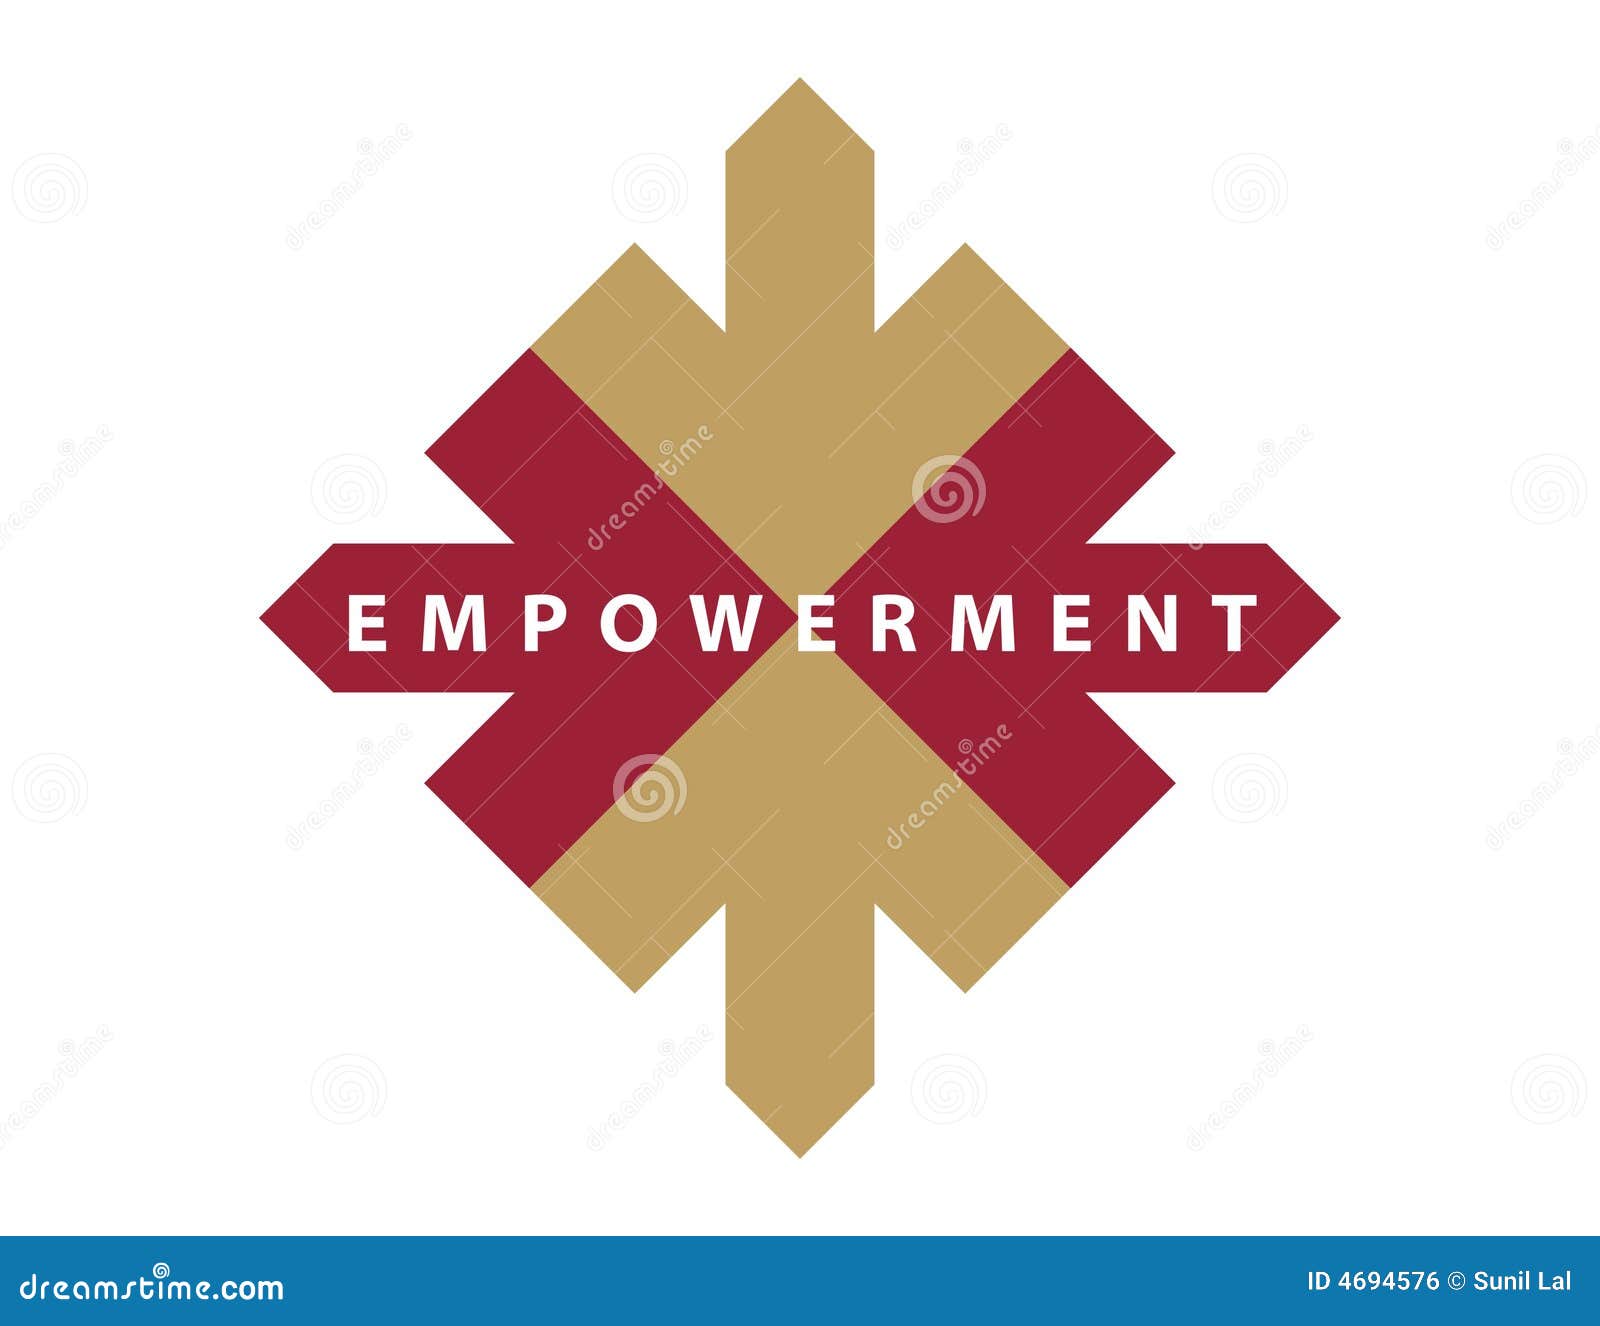 caption / logo-empowerment-2